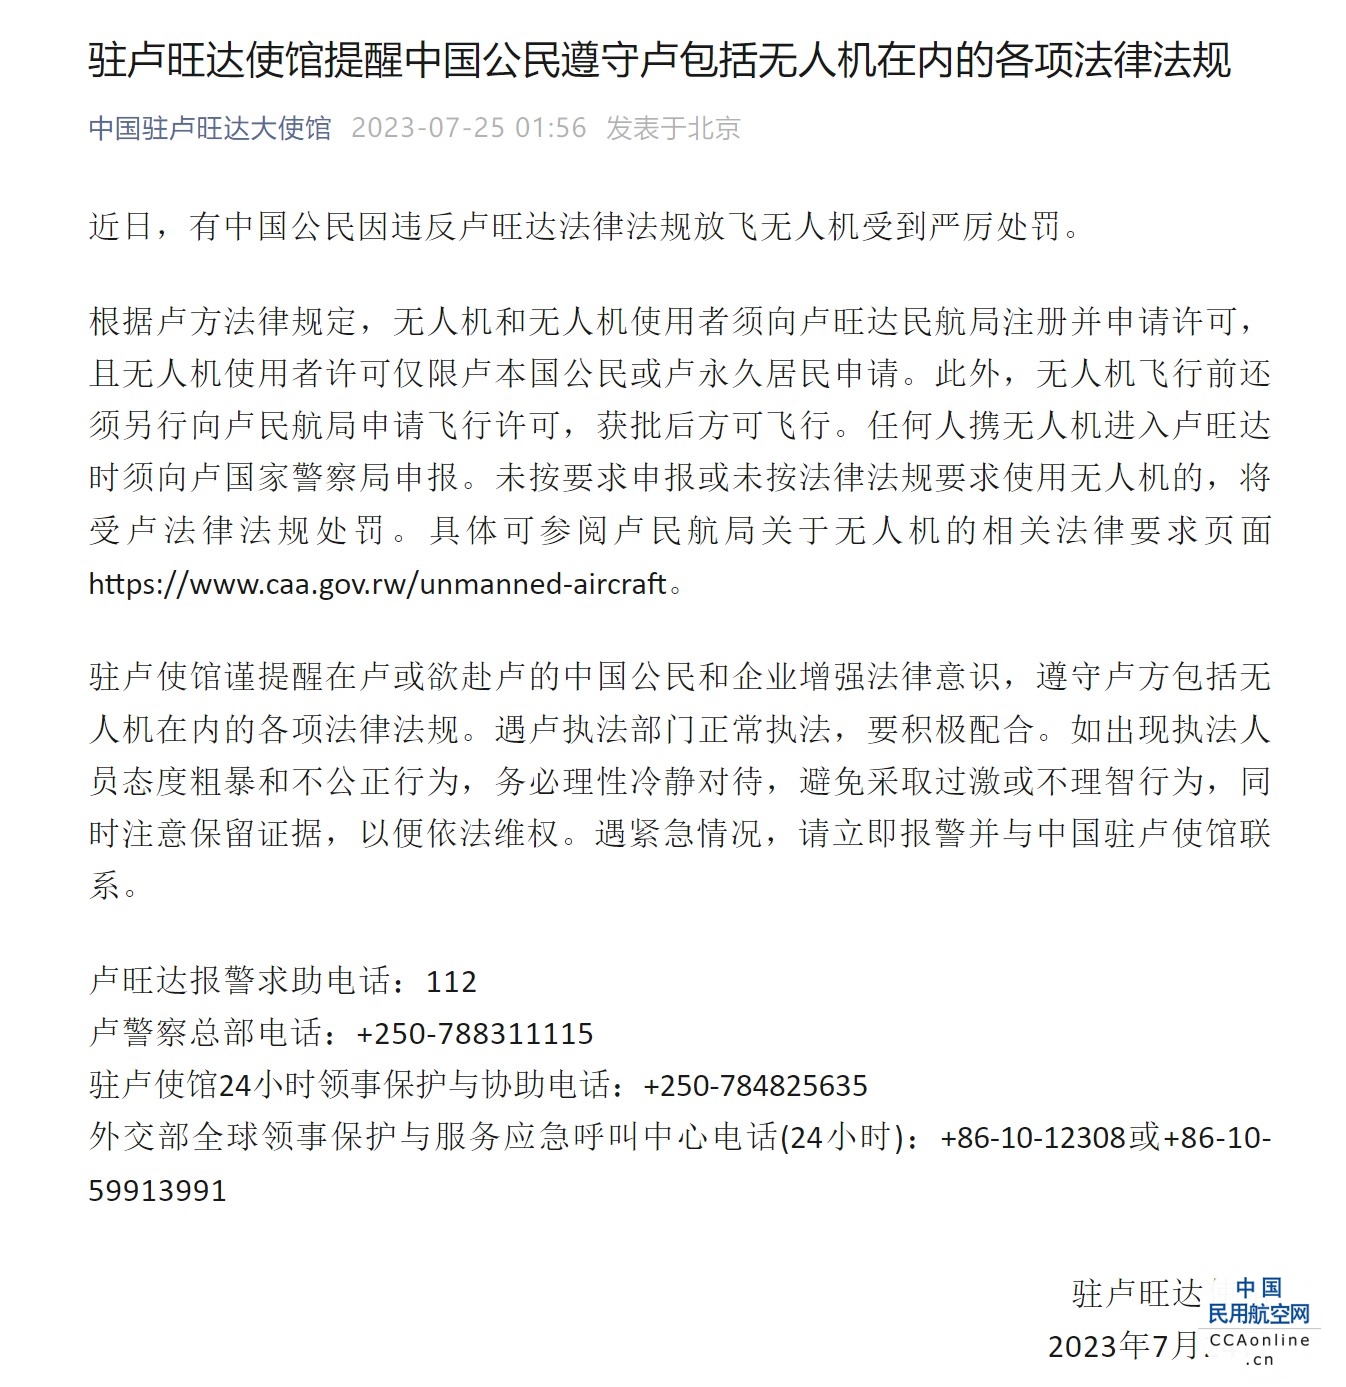 中国公民因违反法律法规放飞无人机受处罚，中使馆发布提醒